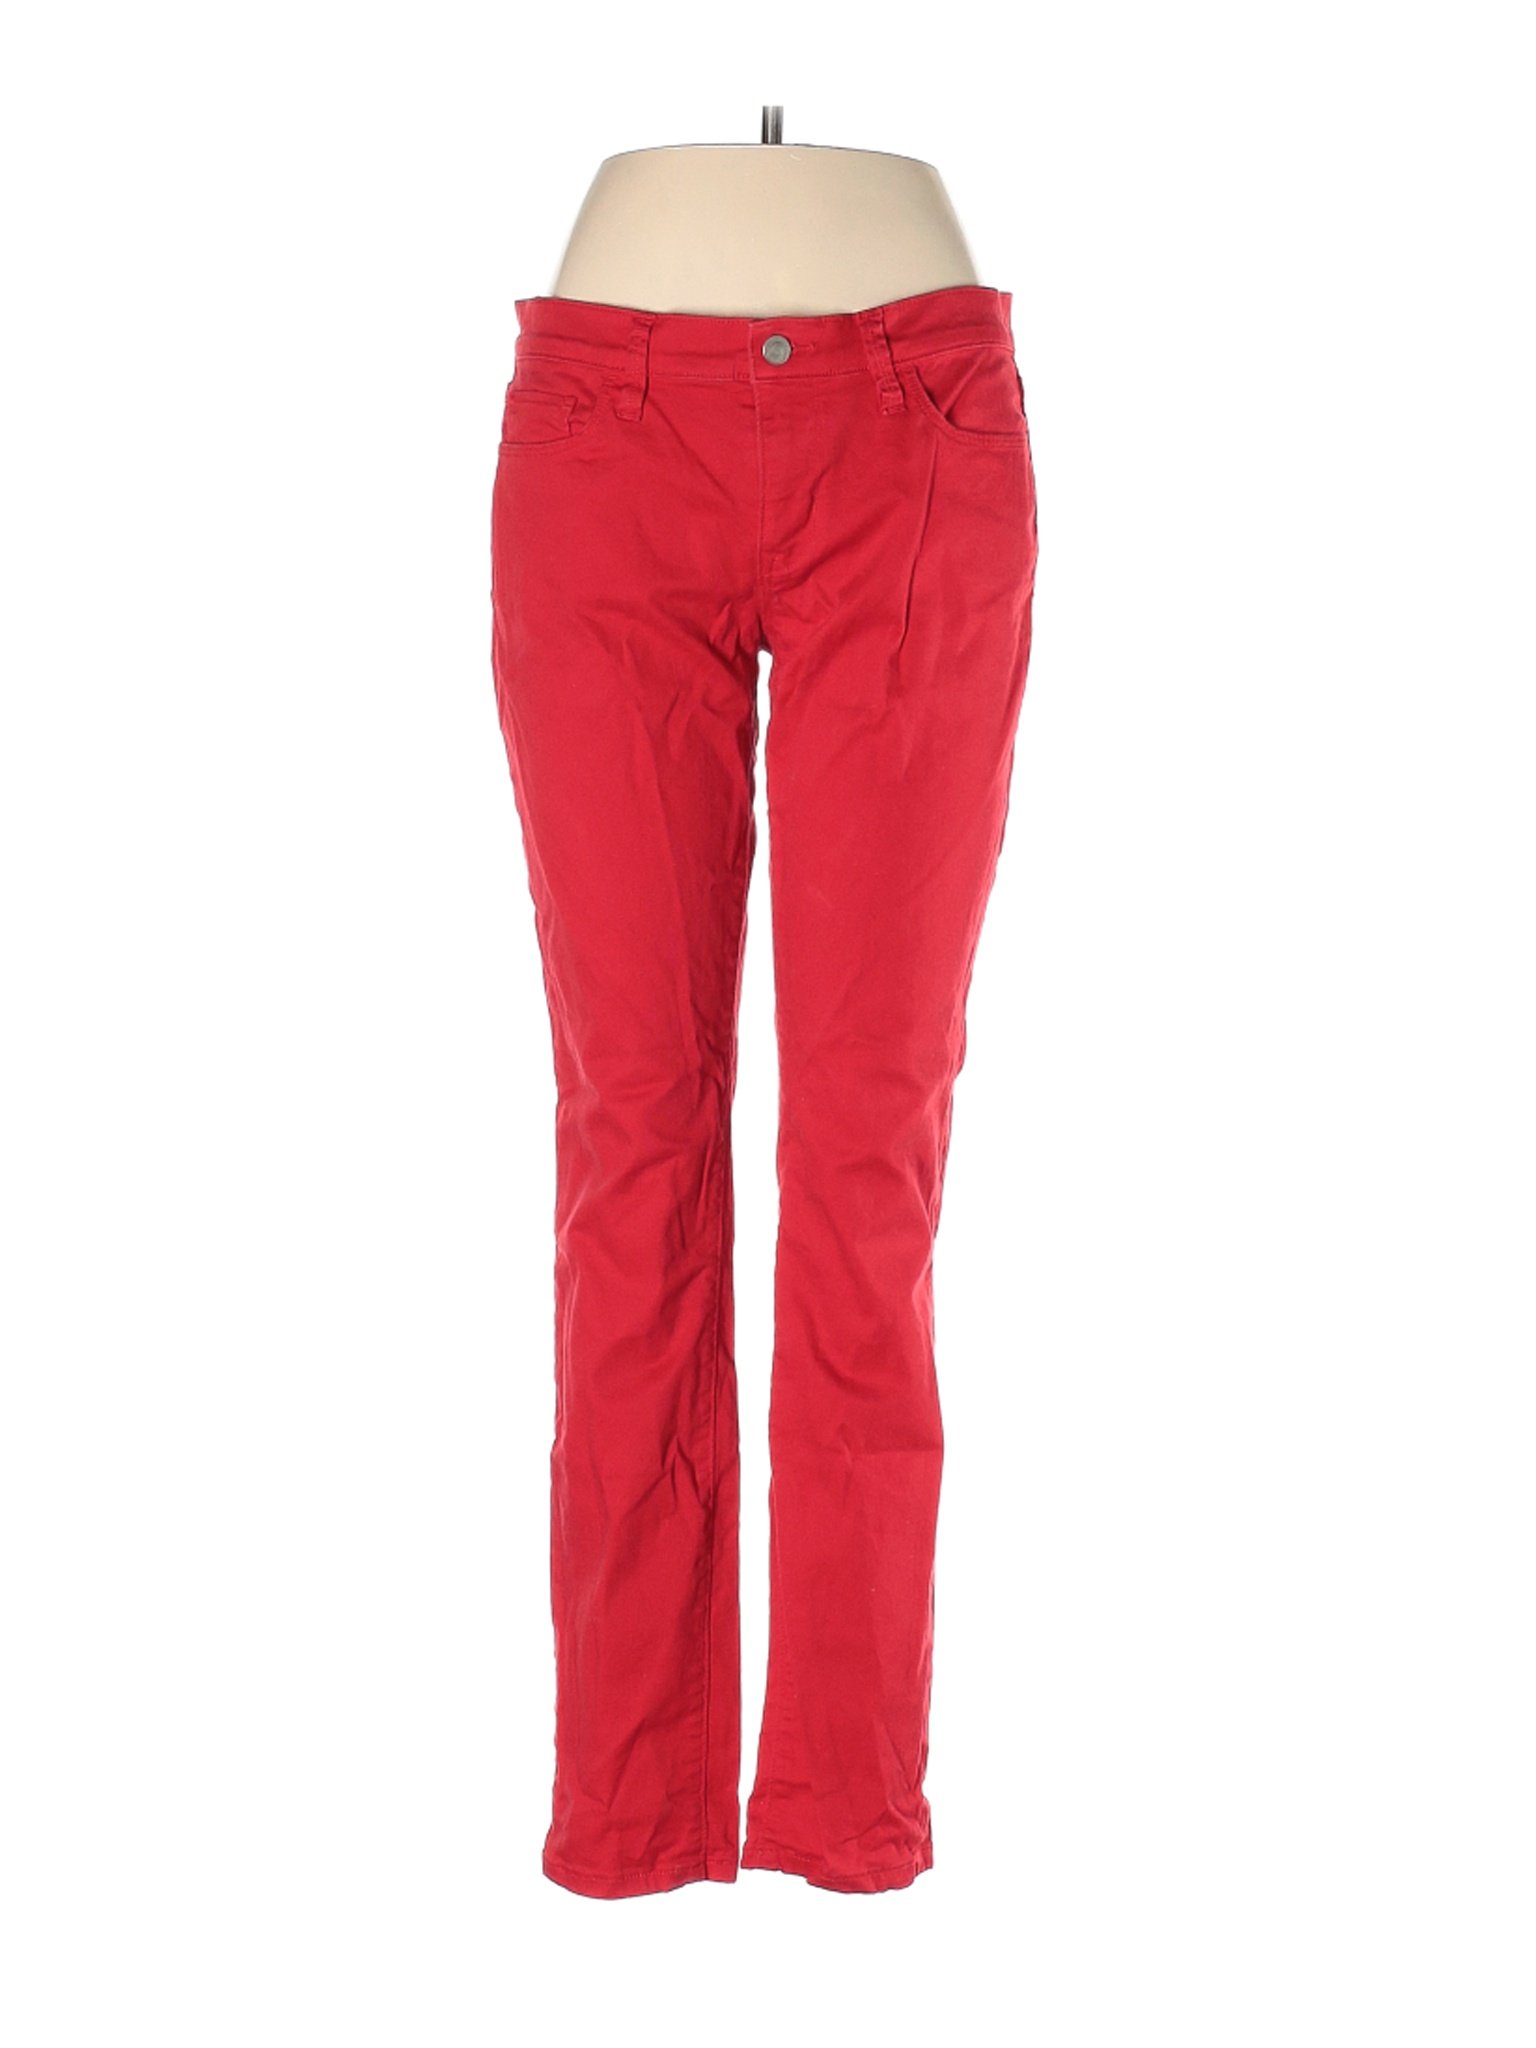 Ann Taylor LOFT Women Red Jeans 6 | eBay